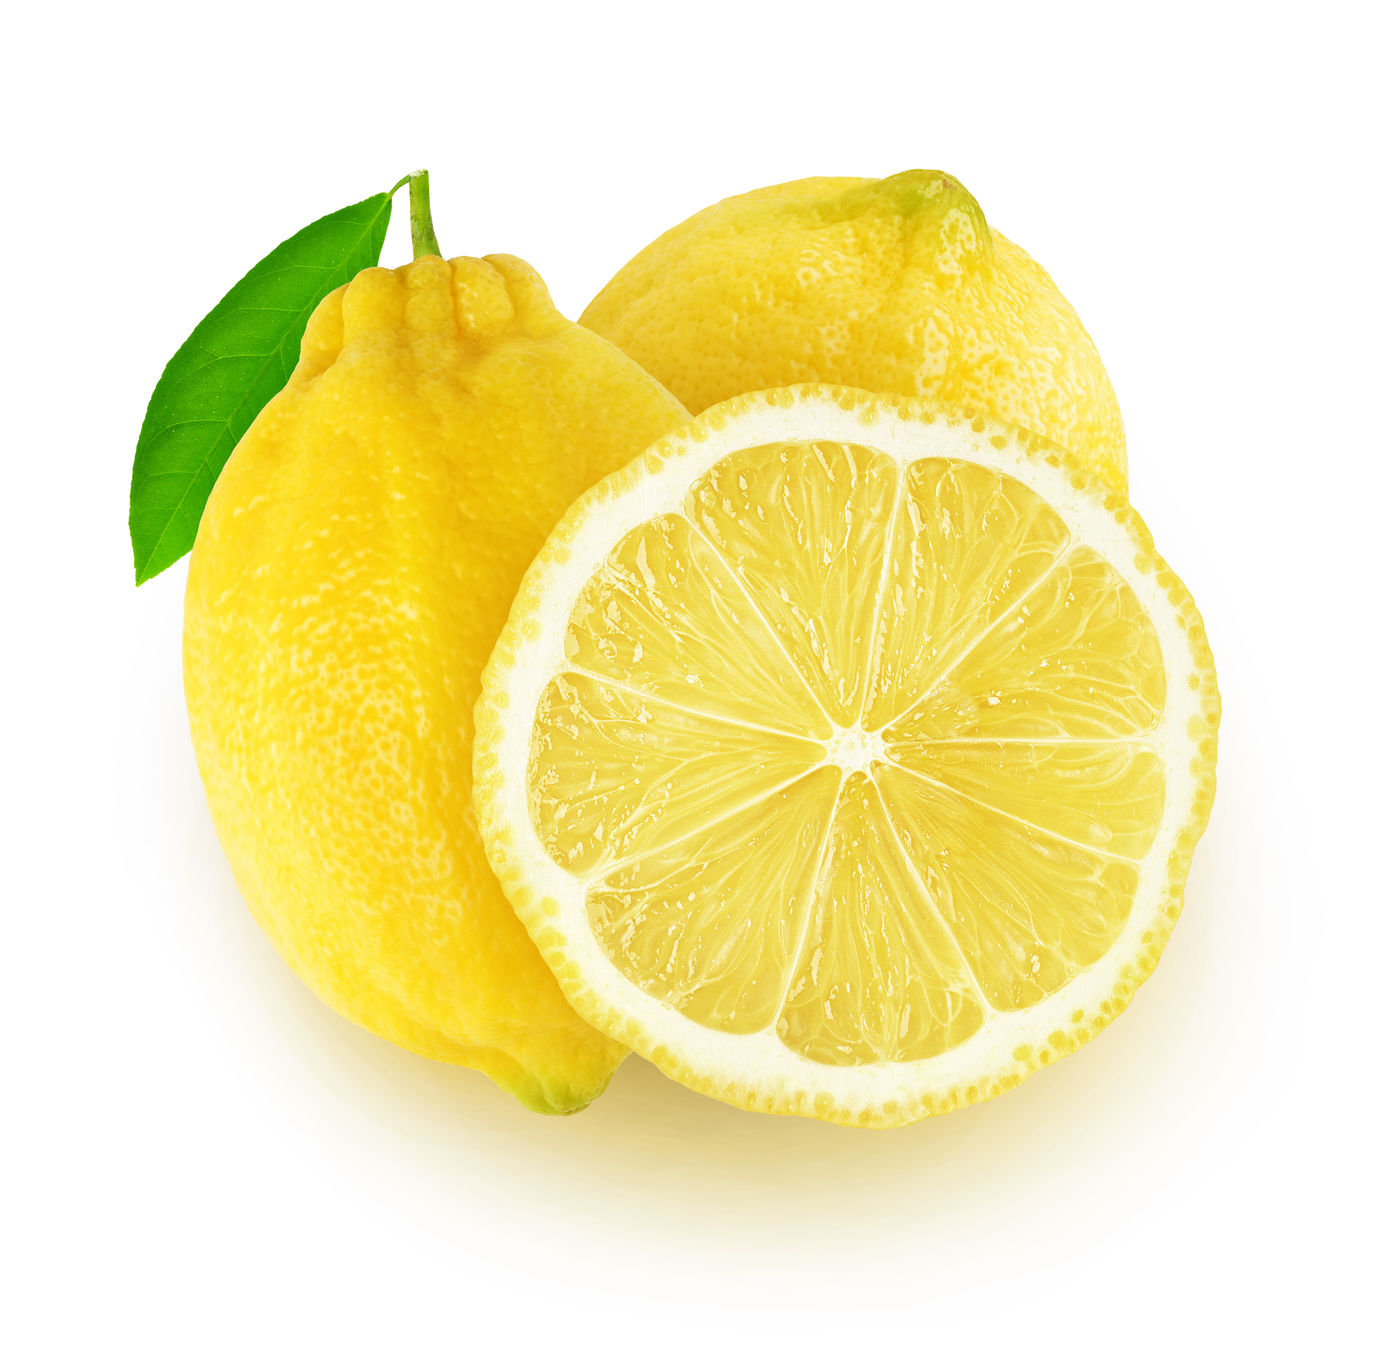 Lemon.   https://www.wocdetox.com/detoxification-supplements.html